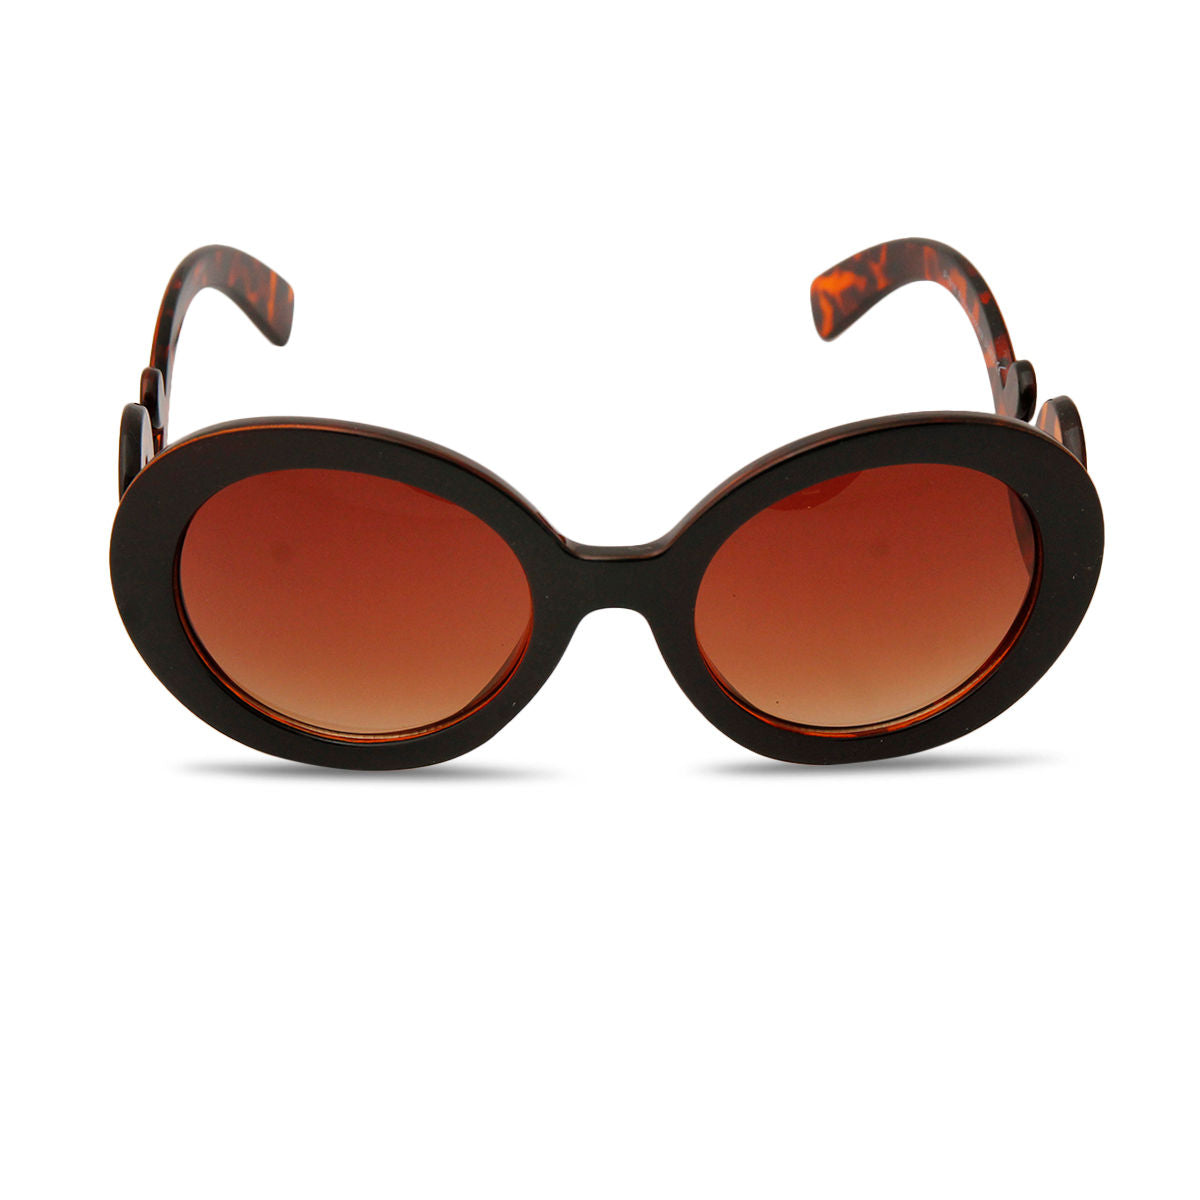 Sunglasses Round Brown Swirl Eyewear for Women